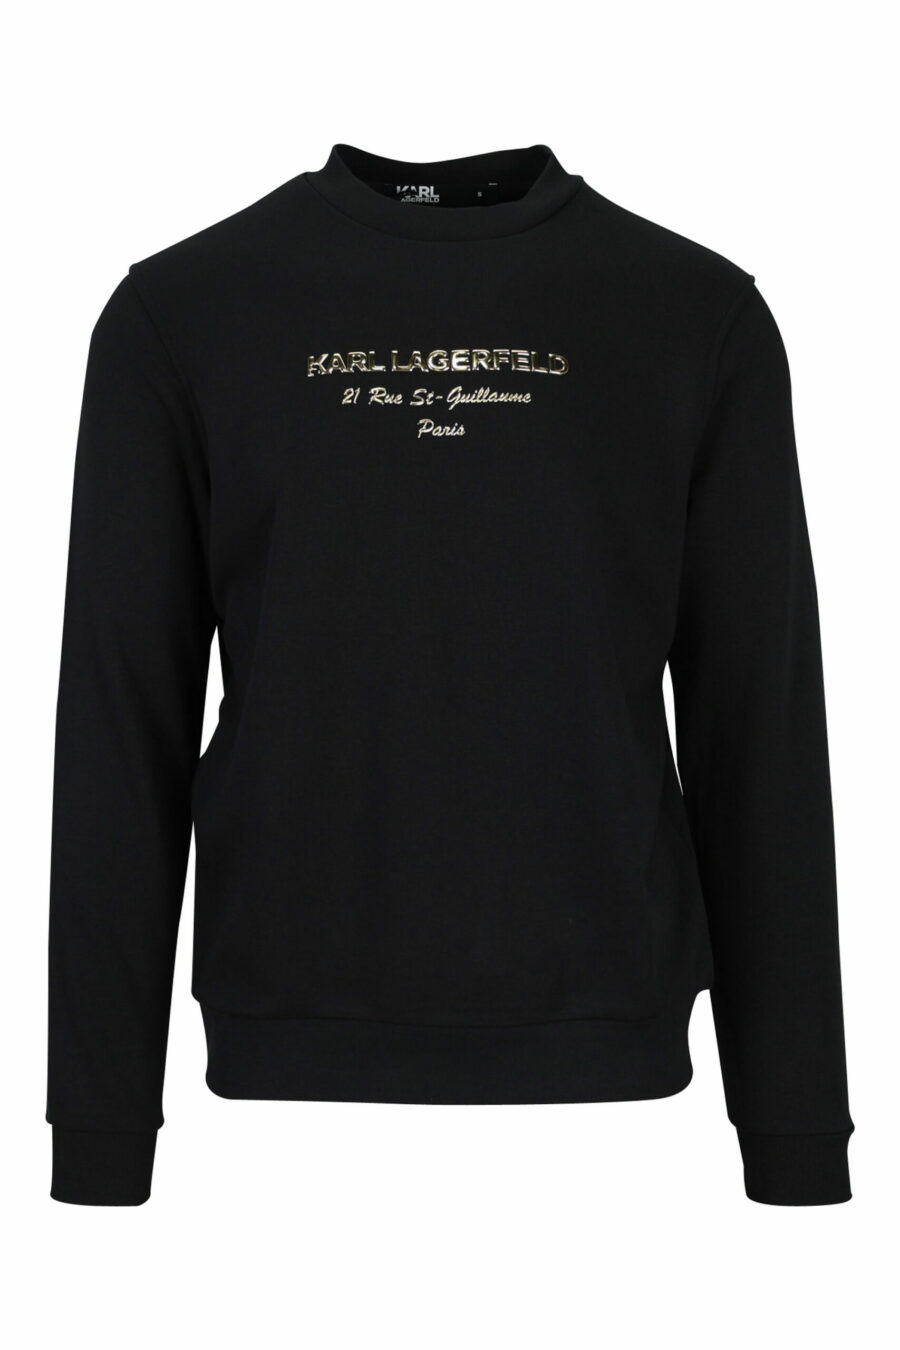 Sweat noir avec logo "rue st guillaume" en lettres dorées - 4062226648271 scaled